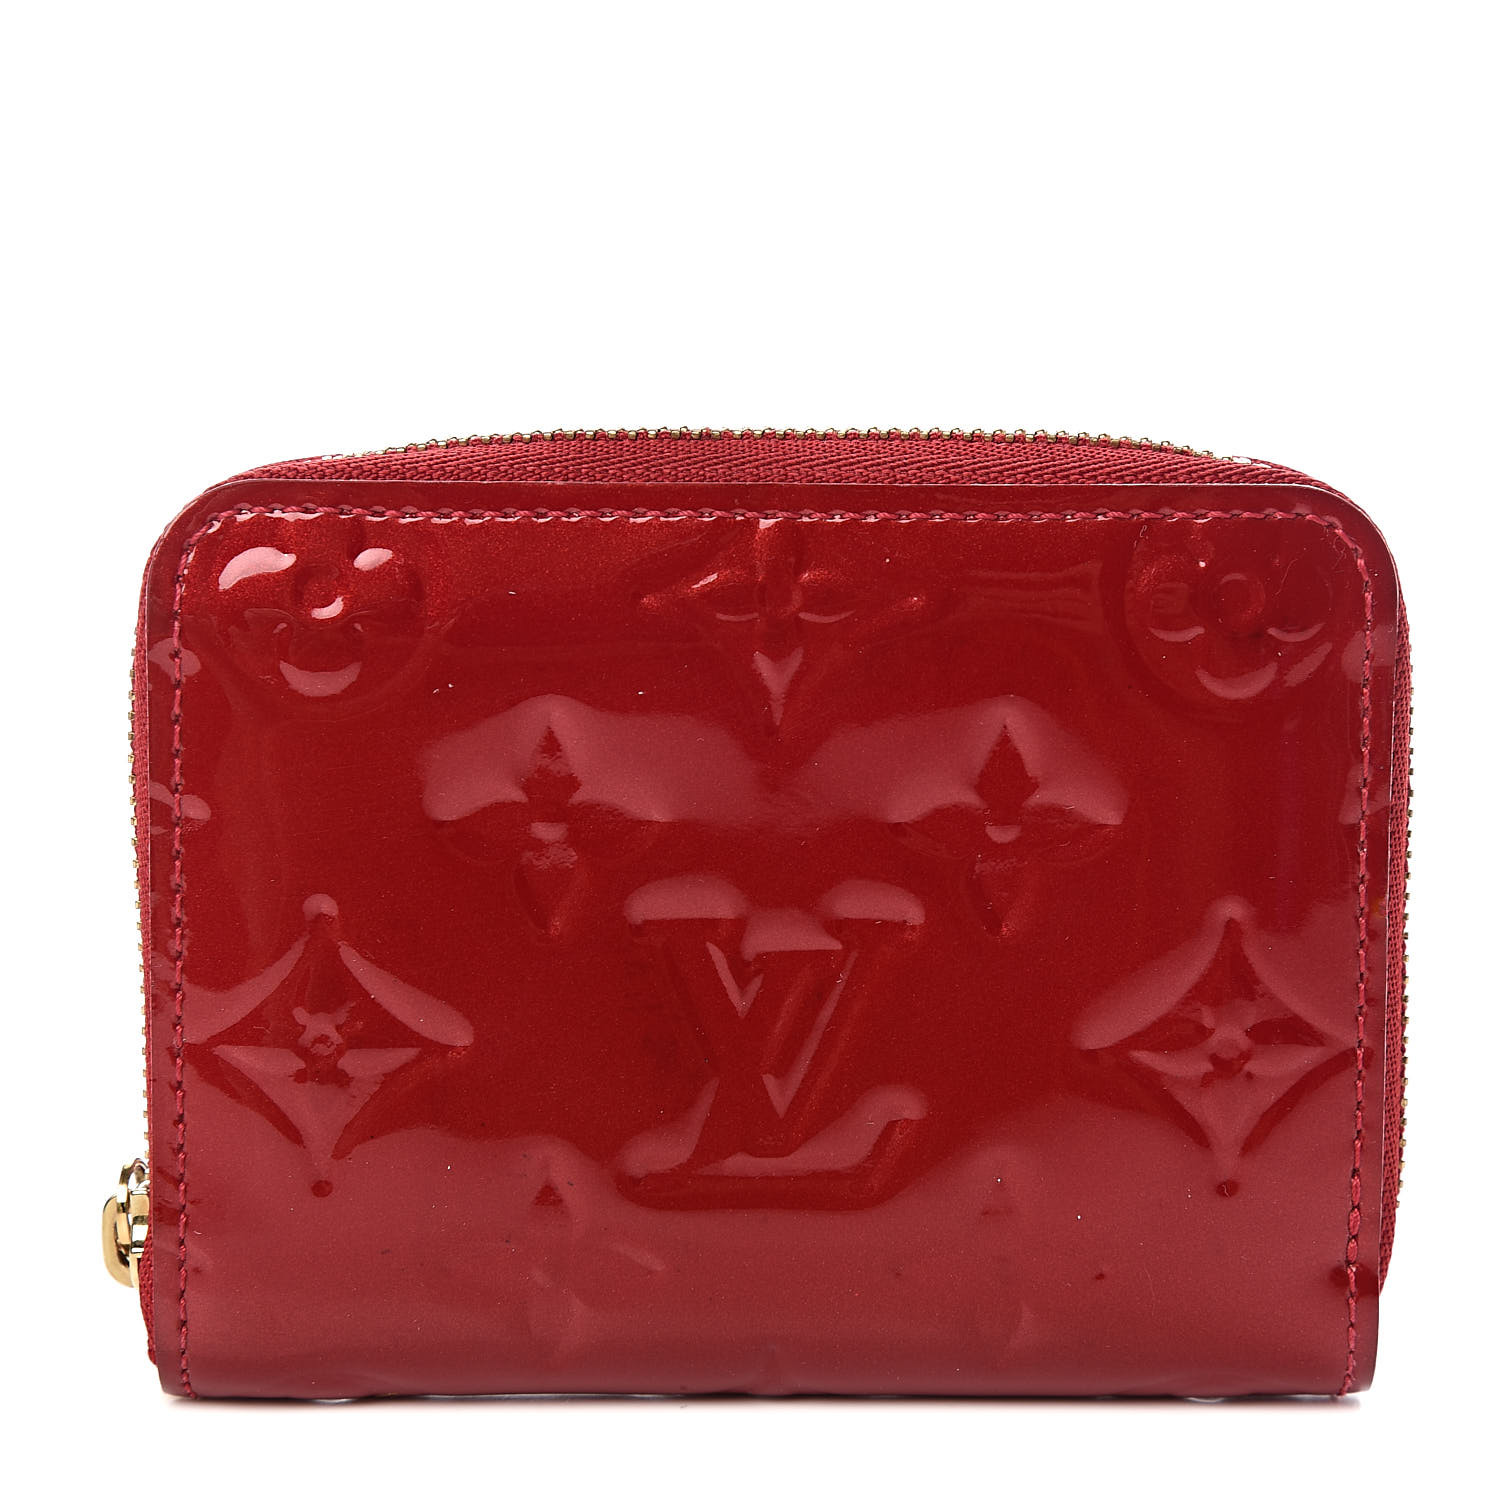 Louis Vuitton Louis Vuitton Coeur Rayures Bag Charm Heart Shaped Key